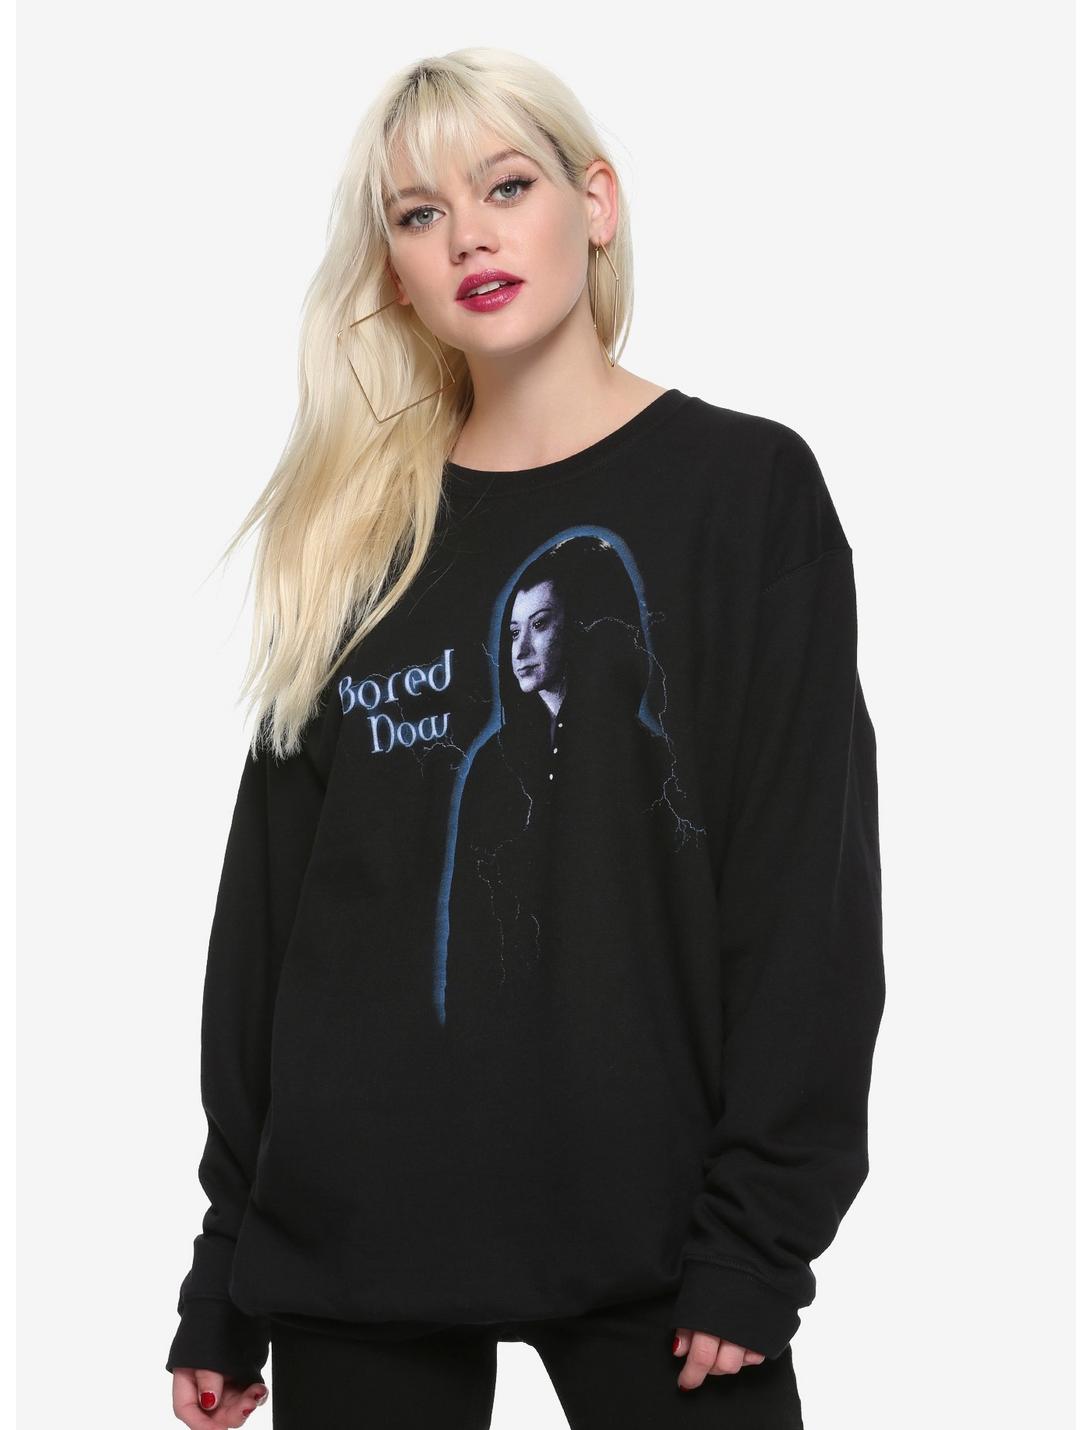 Buffy The Vampire Slayer Bored Dark Willow Girls Oversized Sweatshirt, BLACK, hi-res